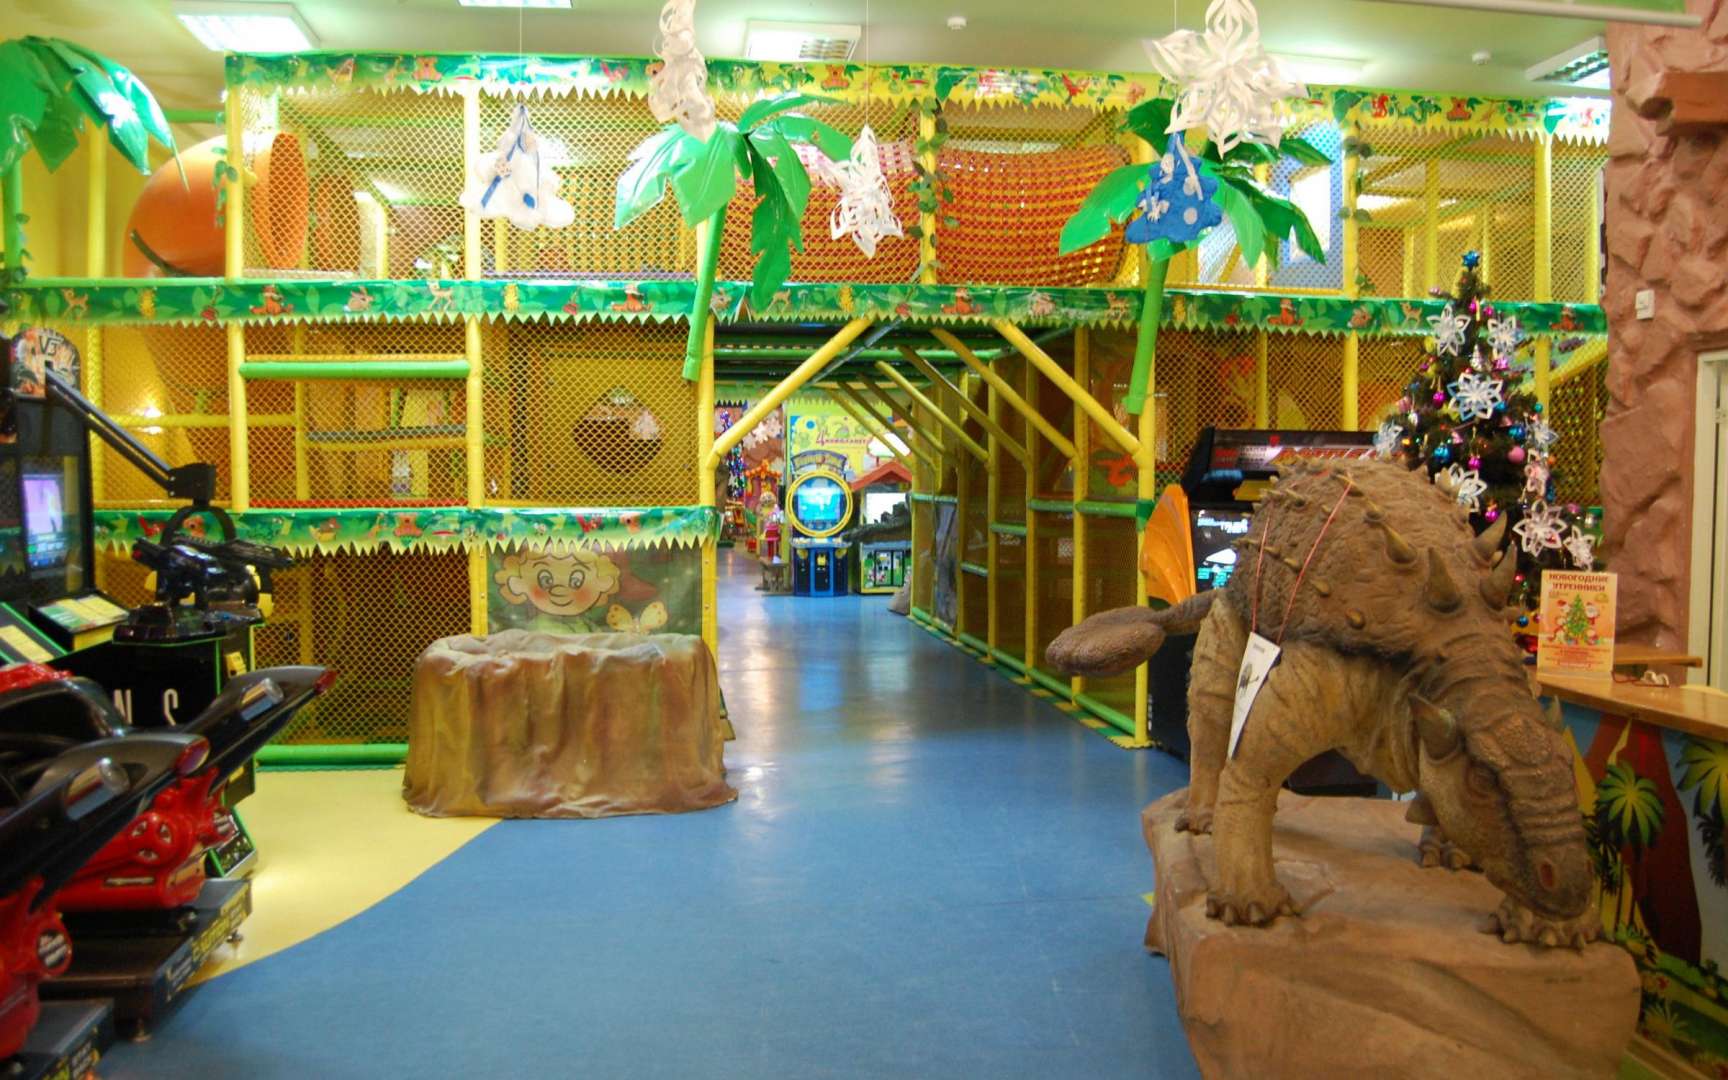 парк хаус детская комната